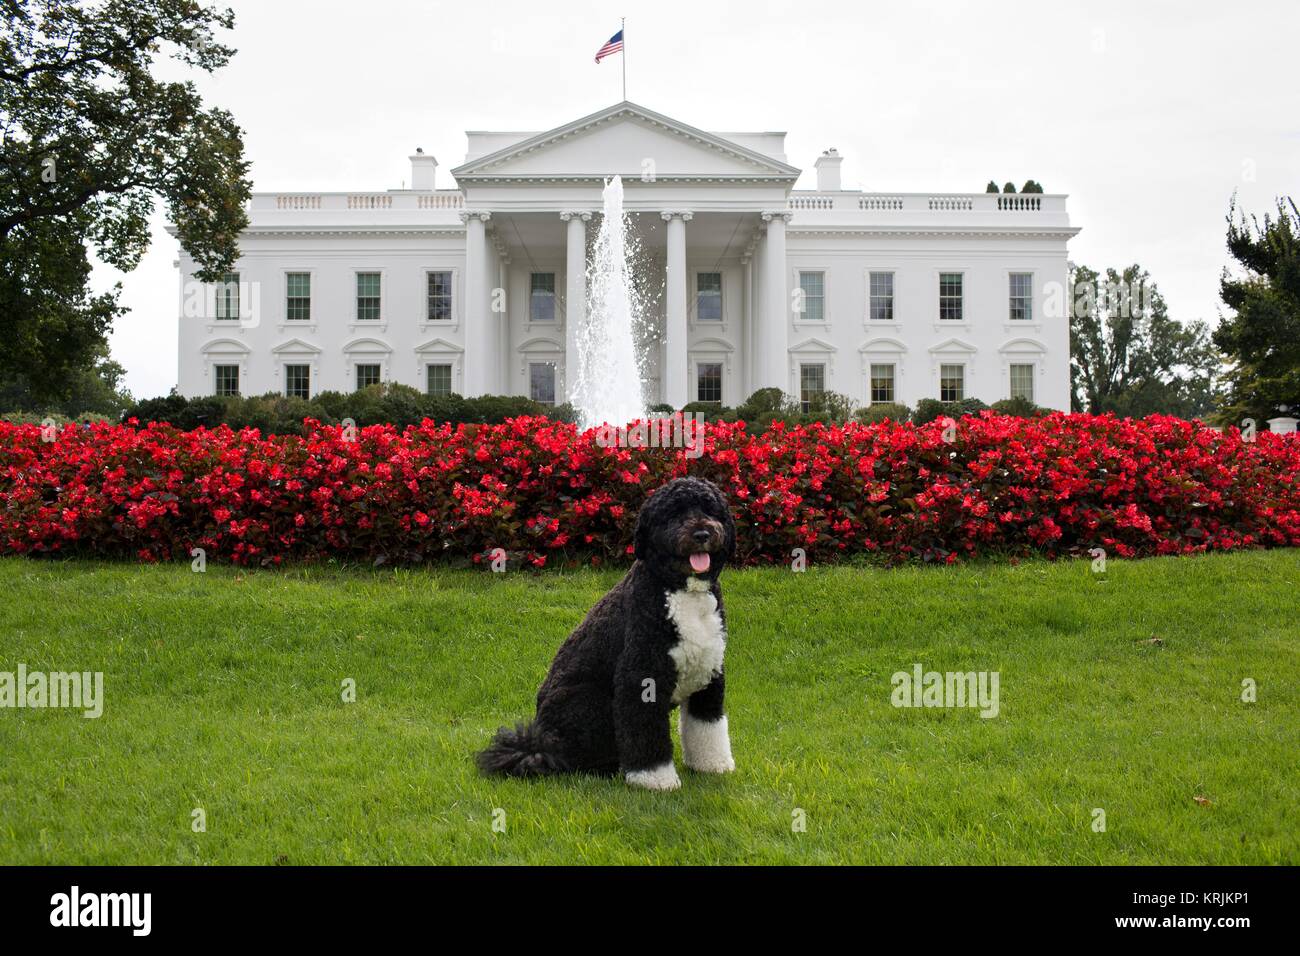 Us-Präsident Barack Obama Familie Hund Bo stellt vor dem Weißen Haus Norden Rasen September 28, 2012 in Washington, DC. Stockfoto